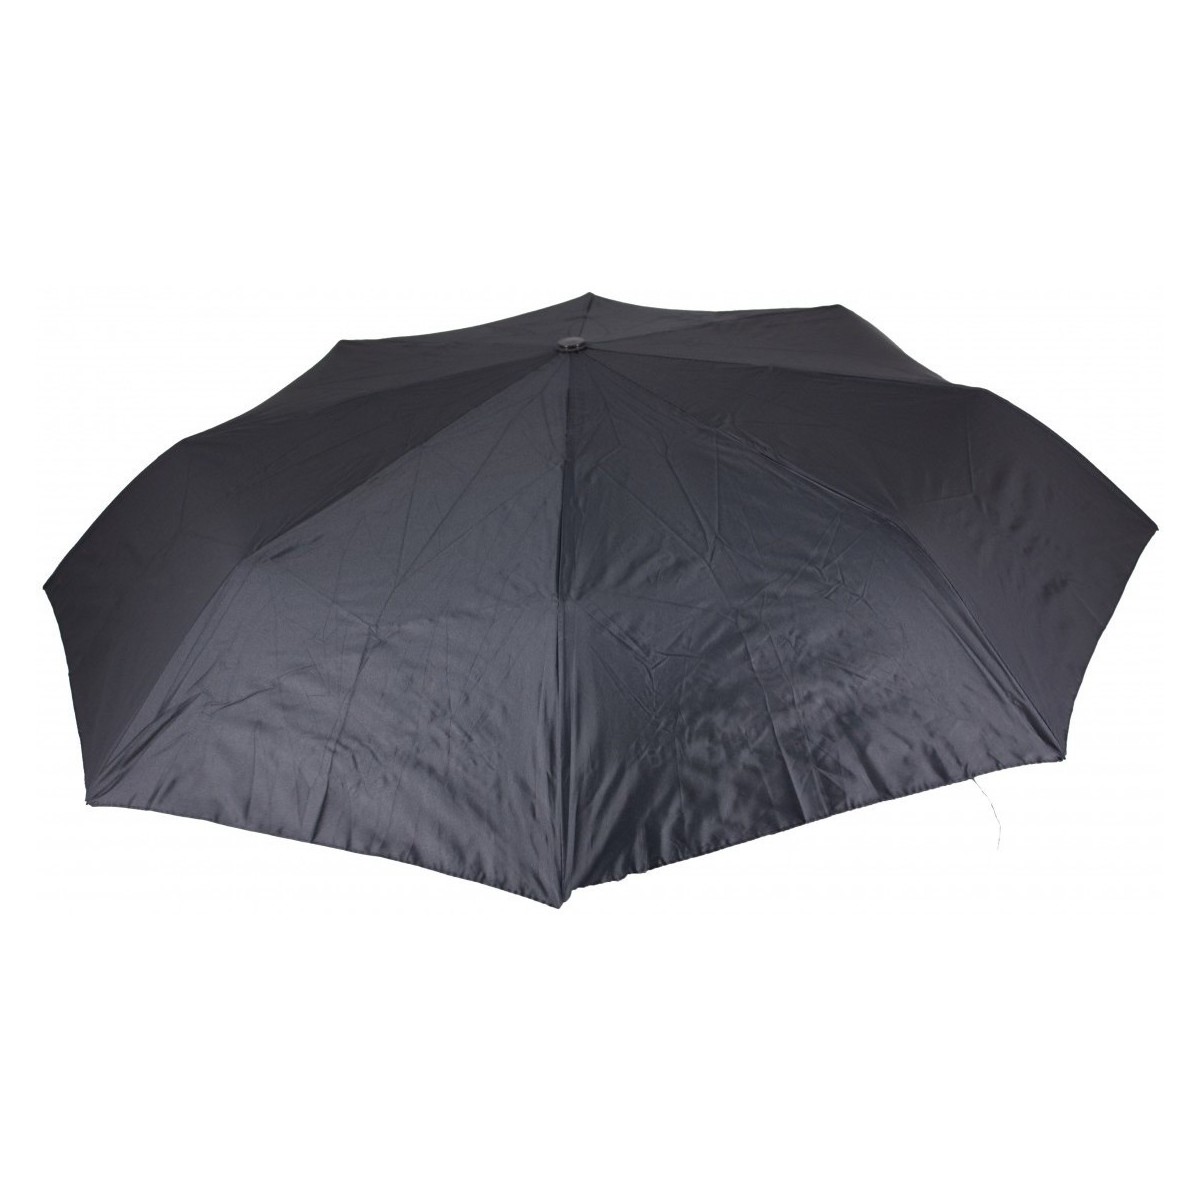 Accessoires textile Parapluies Billtornade Bill Noir